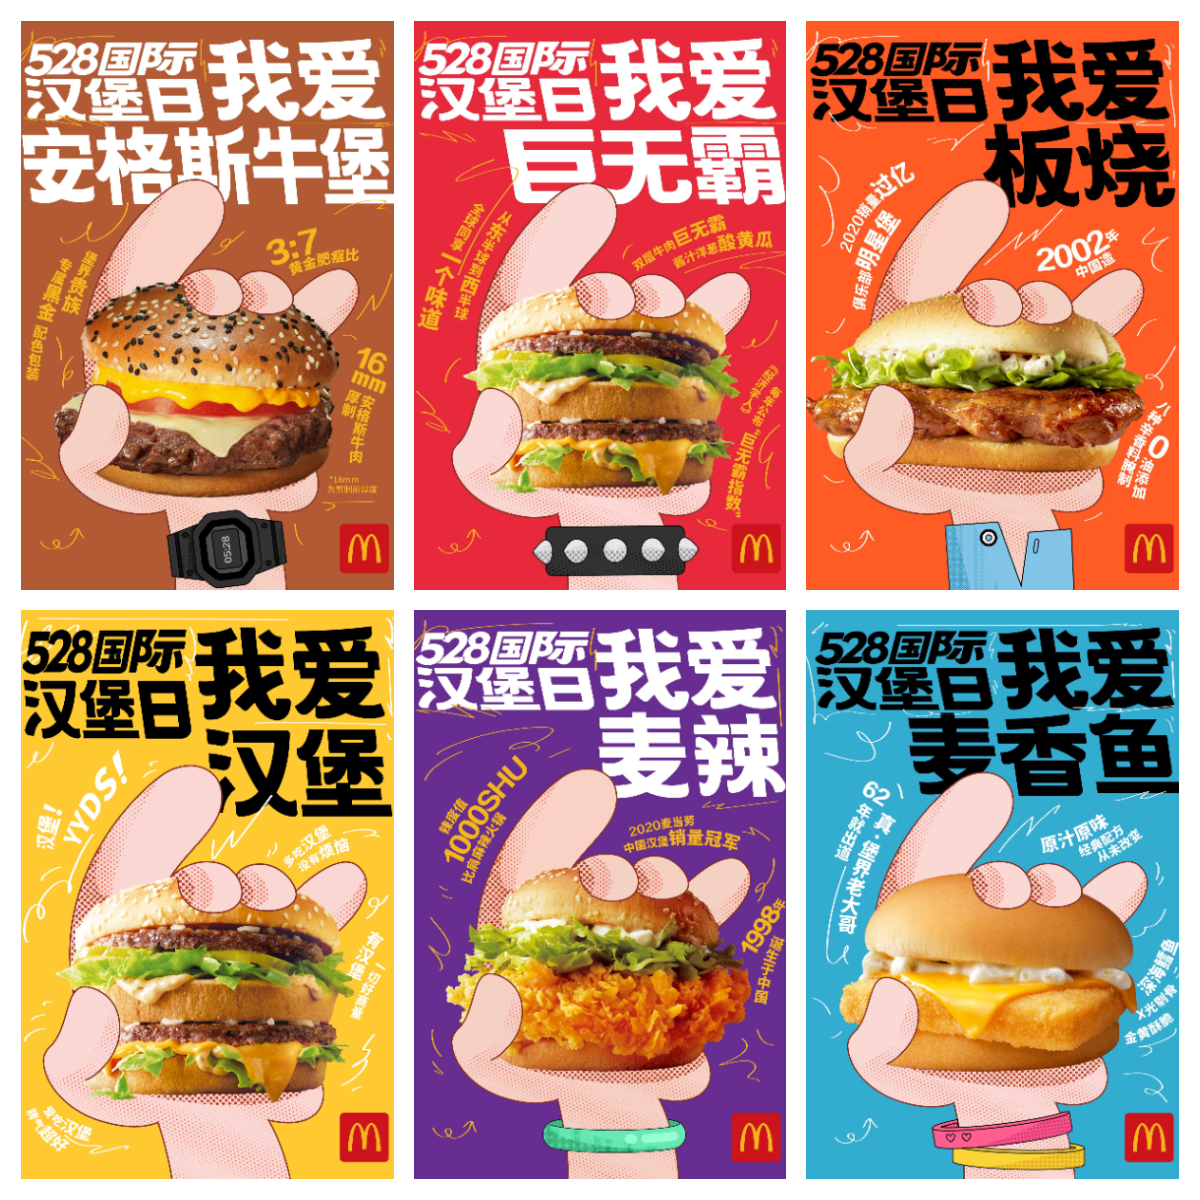 麦当劳中国通过6款人气汉堡海报致敬"528国际汉堡日"